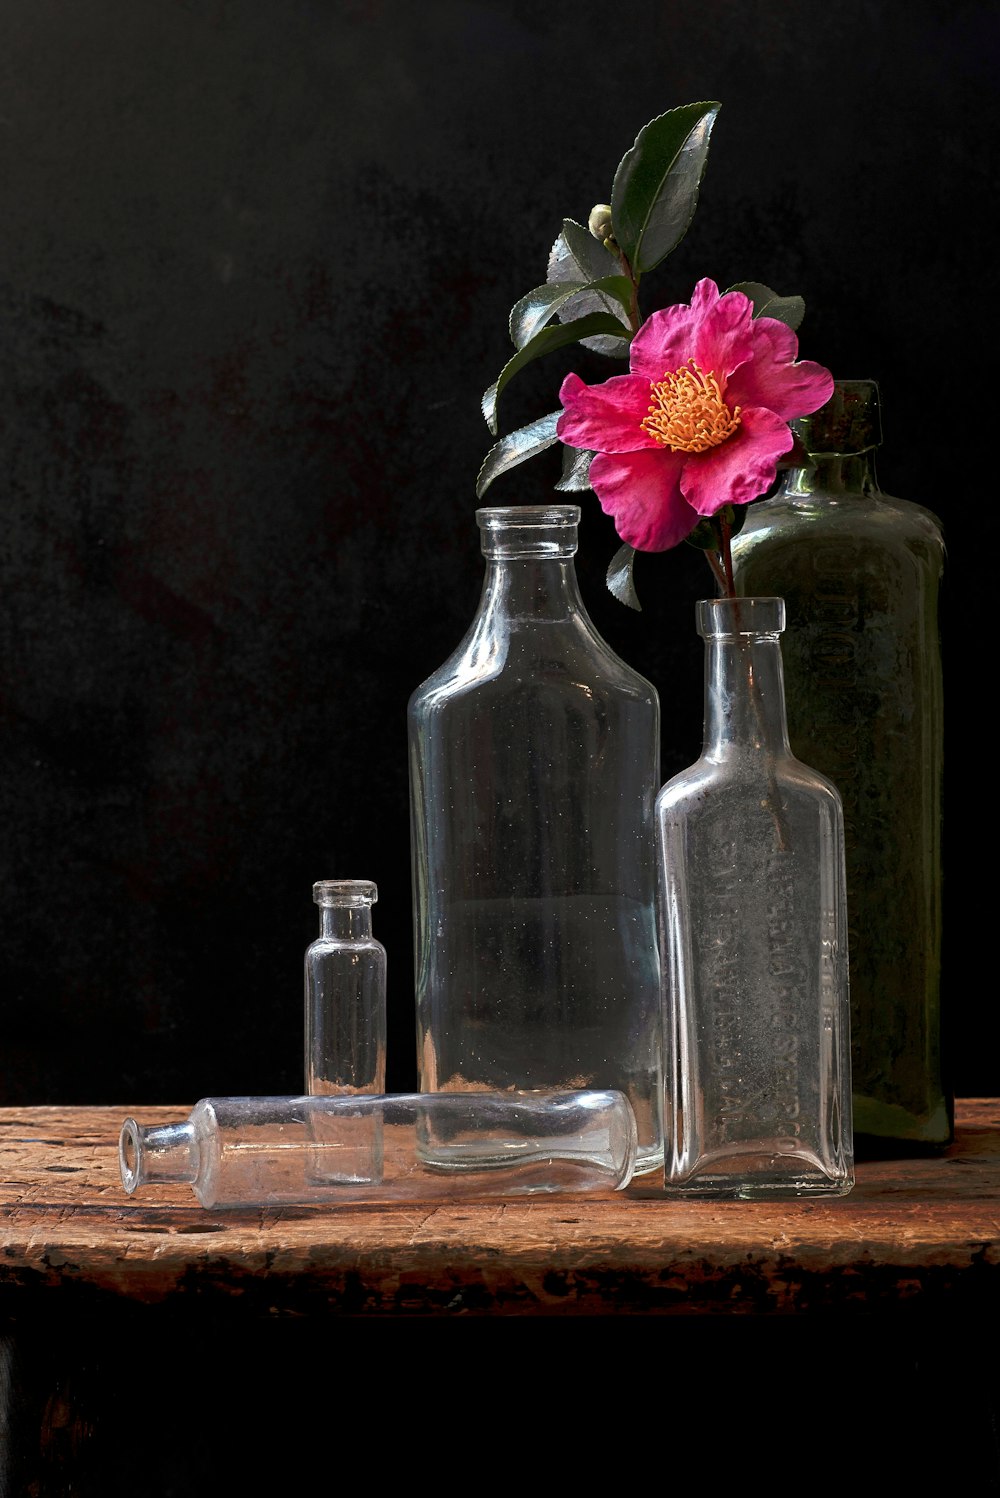 a flower in a glass bottle